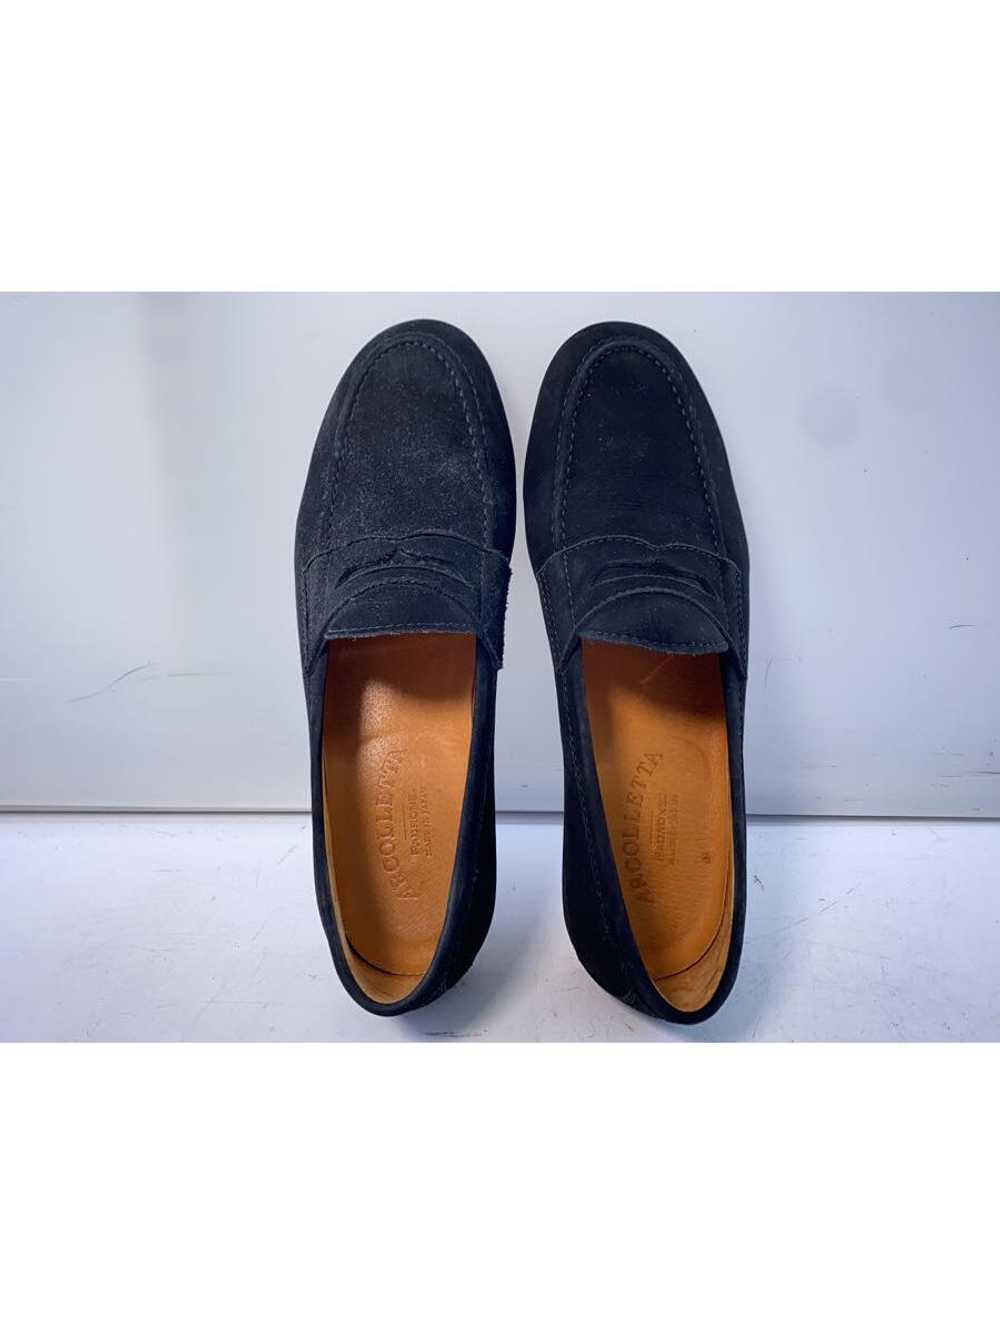 Regal Loafers/40/Blk Shoes BUK70 - image 3